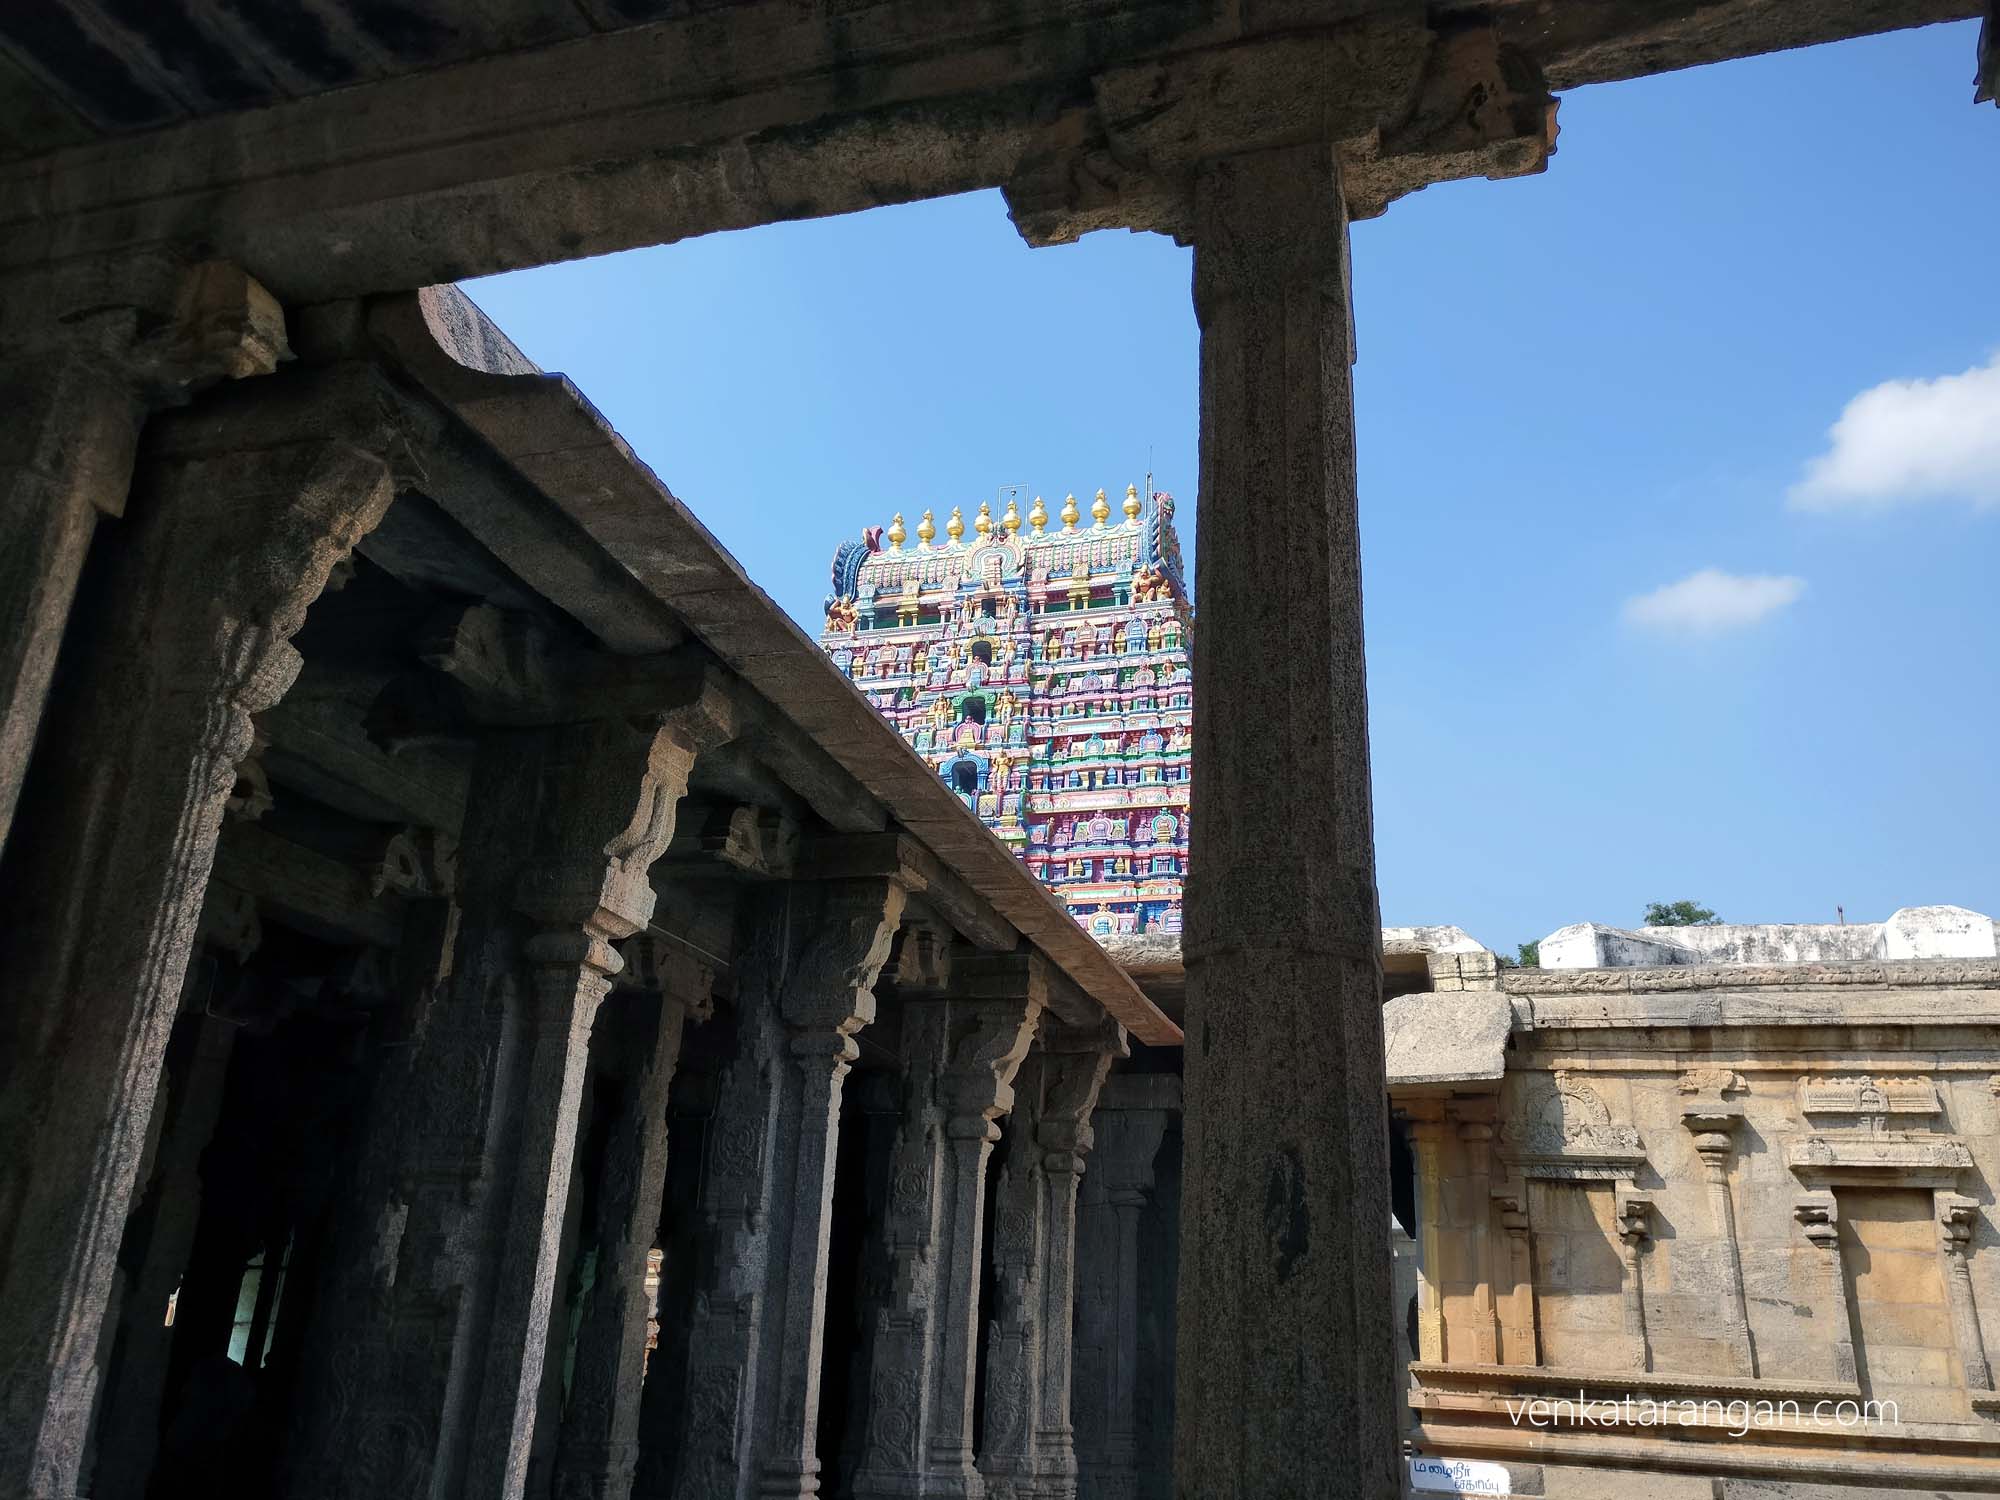 View from the inside of the gopuram, Srimushnam